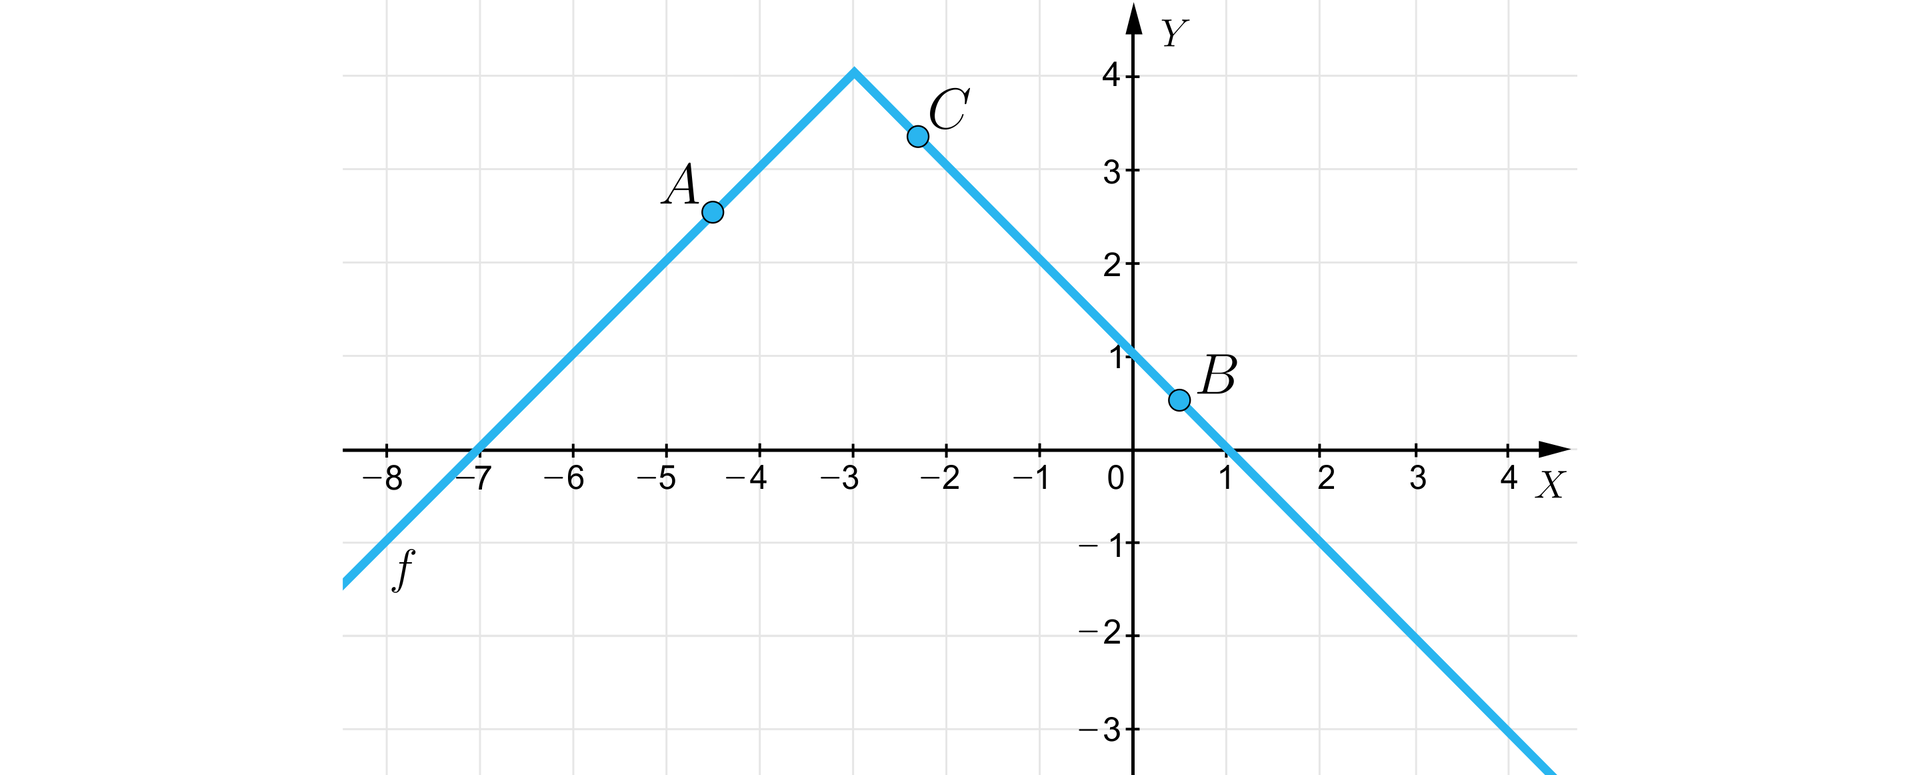 Ilustracja przedstawia układ współrzędnych z poziomą osią X od minus 8 do 4 oraz z pionową osią Y od minus 3 do czterech. W układzie współrzędnych zaznaczono wykres funkcji f składający się z dwóch ukośnych półprostych o wspólnym początku. Lewa półprosta biegnie w trzeciej i drugiej ćwiartce od minus nieskończoności, przez punkt  -7;0 do swojego końca o współrzędnych -3;4. Z tego punktu biegnie prawa półprosta, przecinając osie w punktach 0;1 oraz 1;0. Wyróżniono zamalowanymi kółkami trzy punkty należące do wykresu: punkt  A=-412;212, punkt  C=-213;313 oraz punkt B=12;12